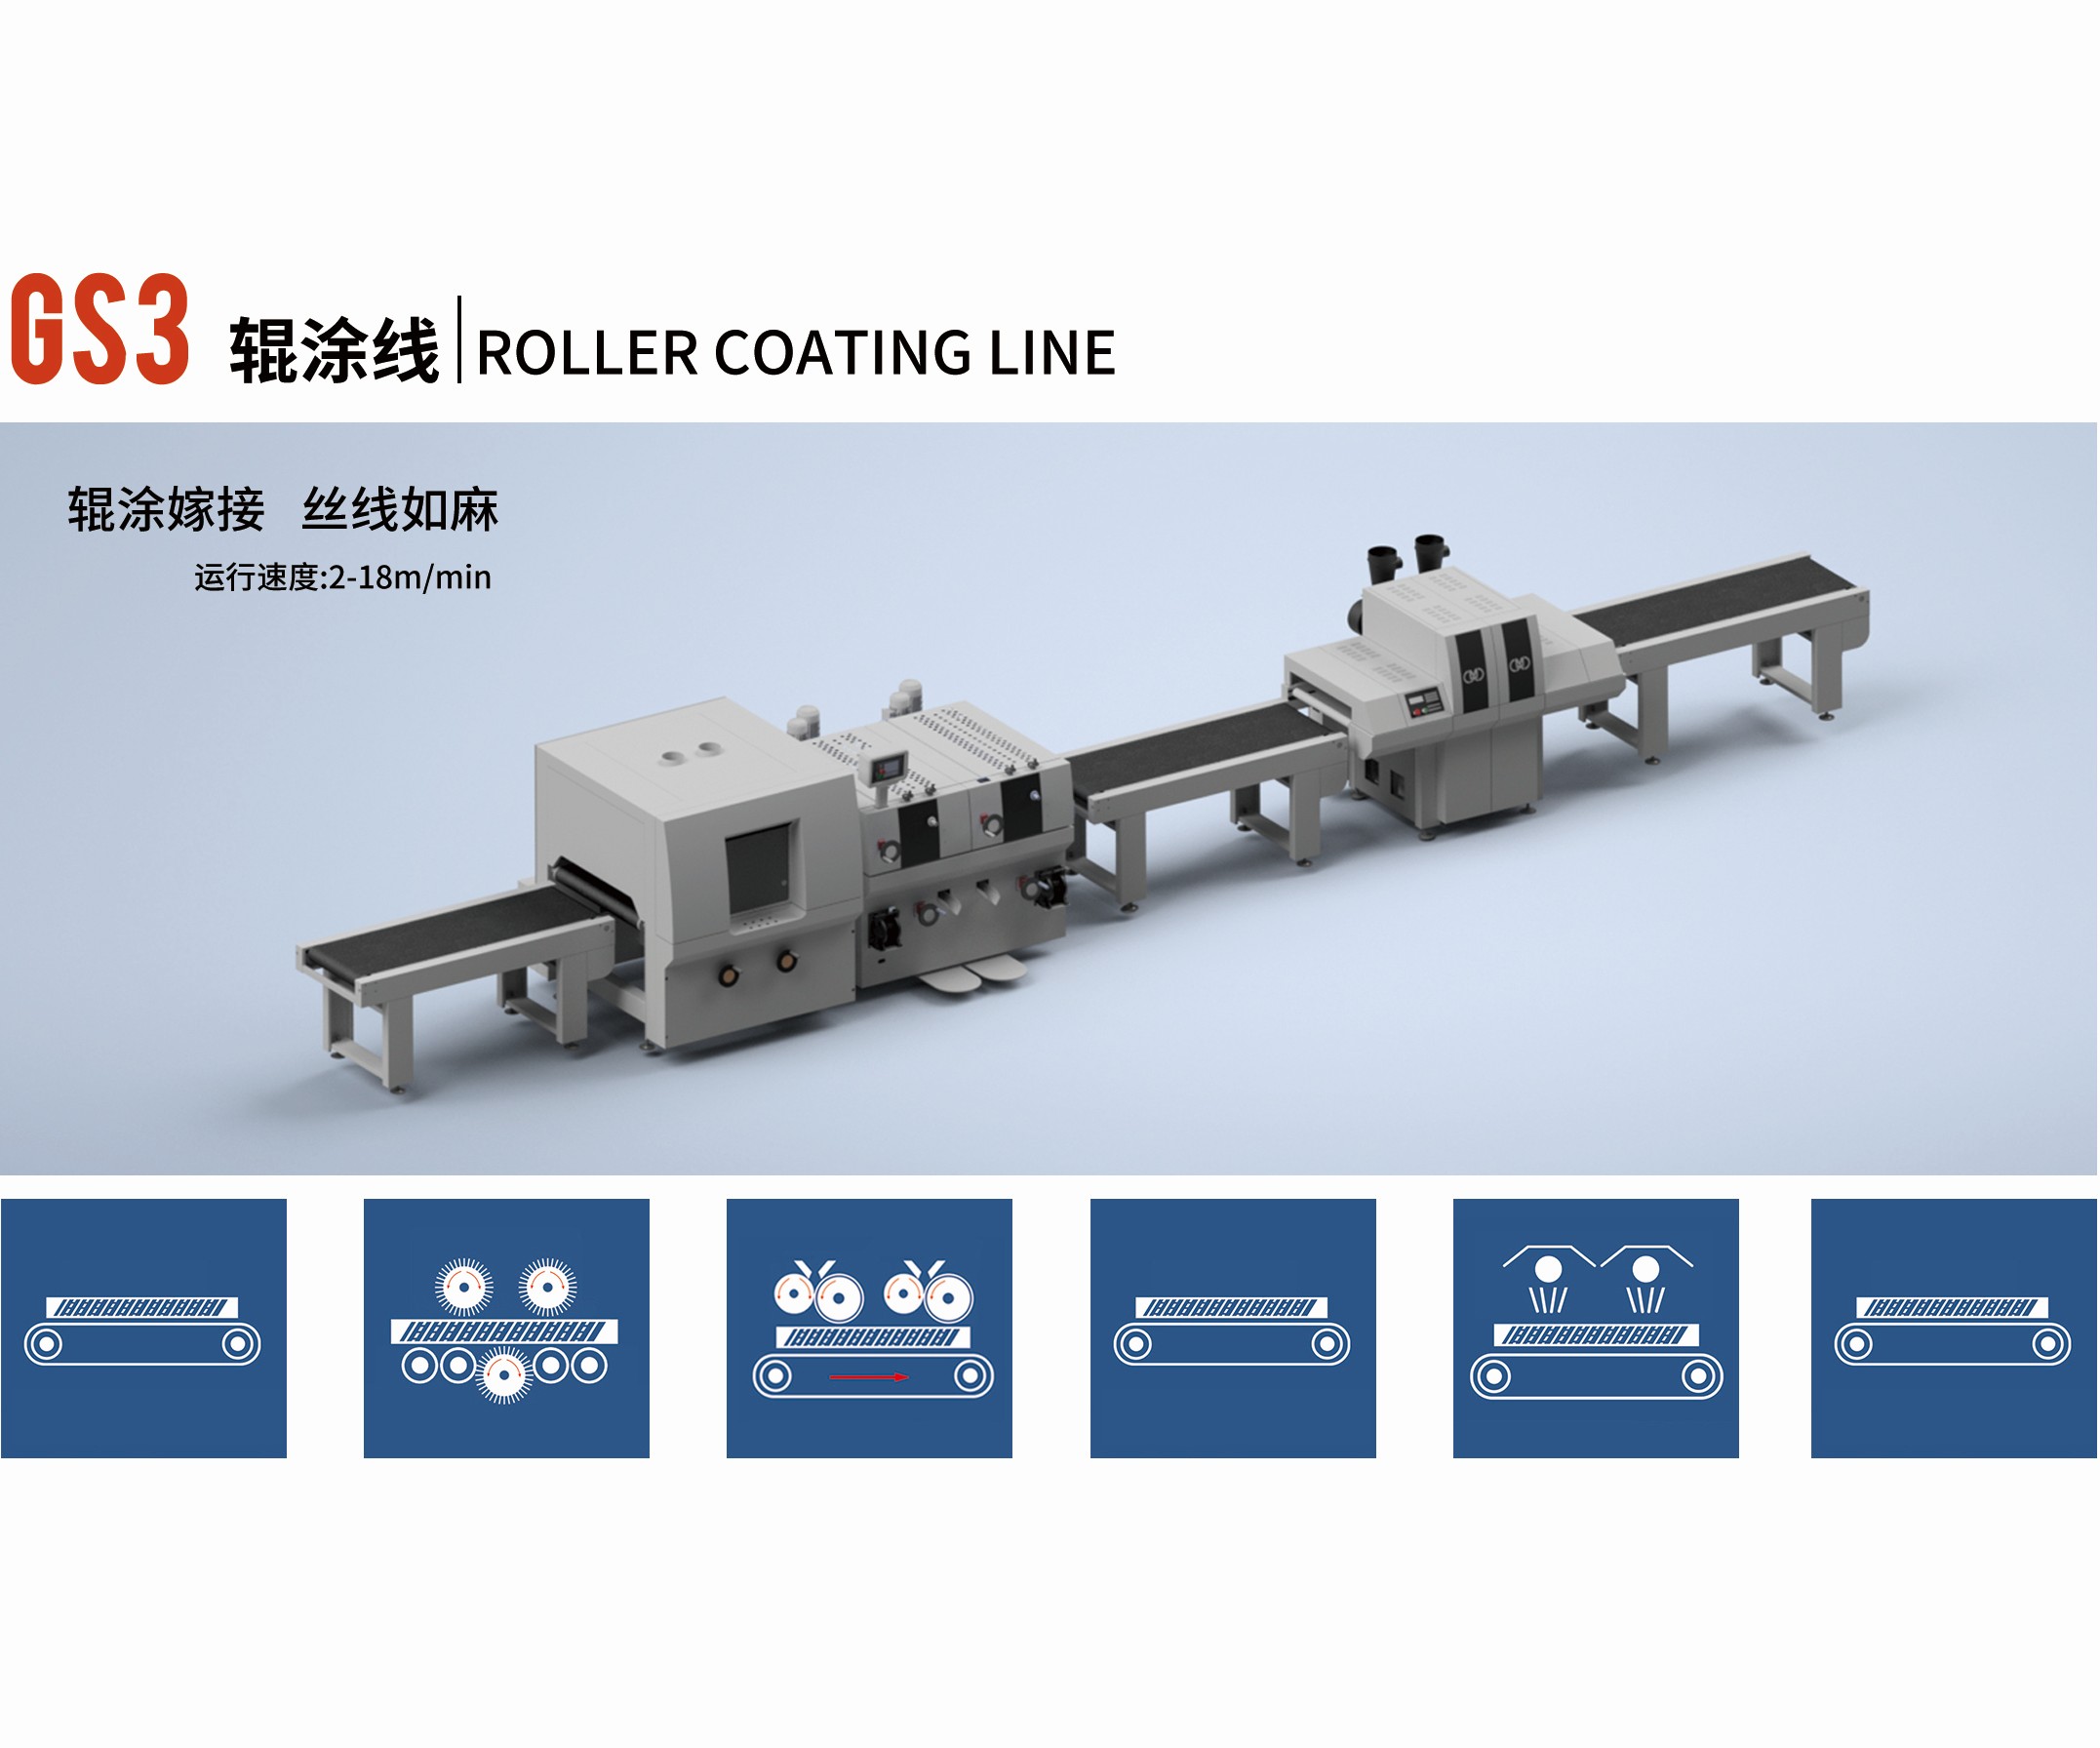  Roller coating line